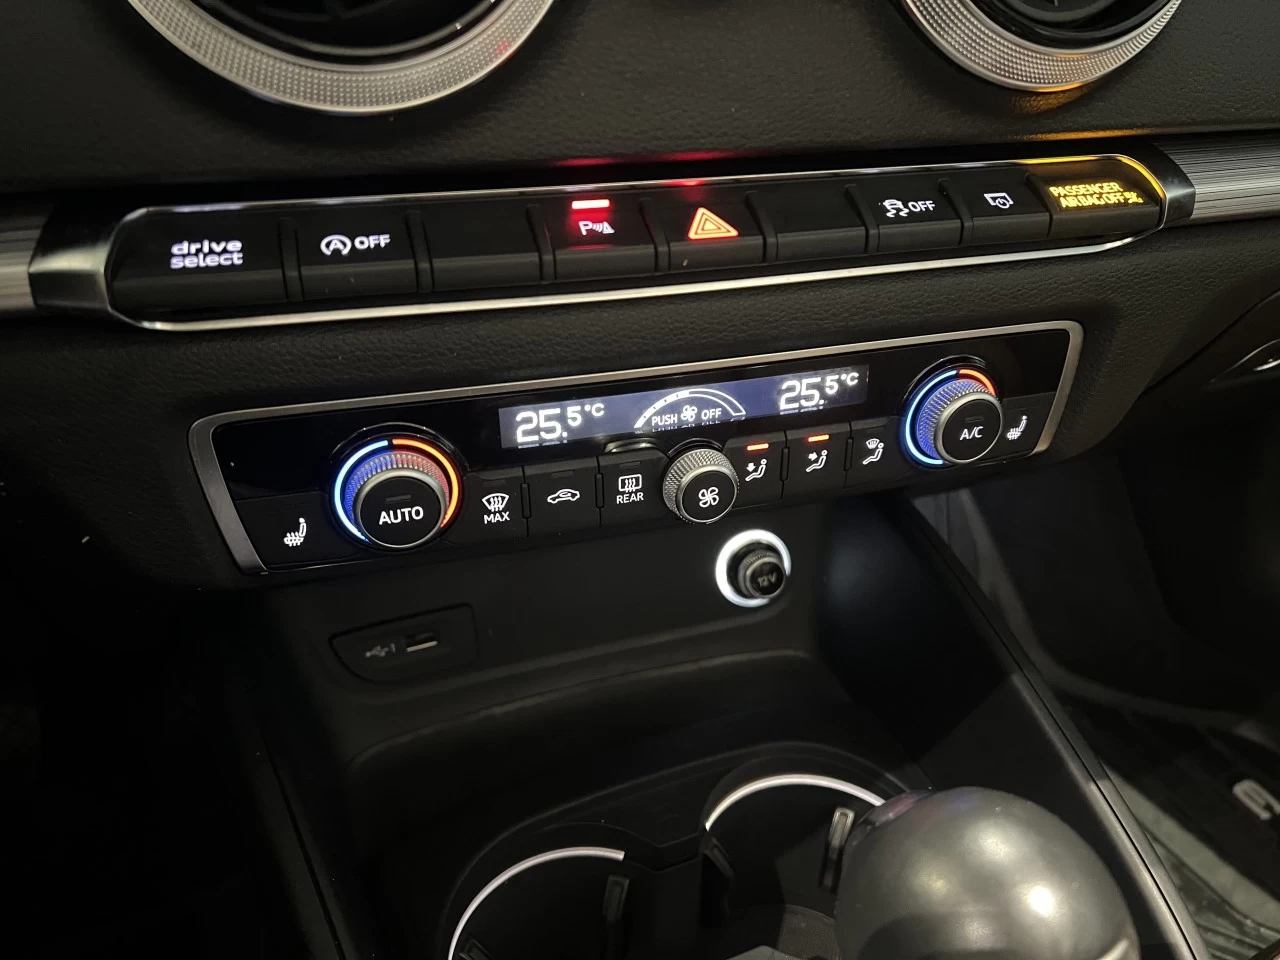 2019 Audi A3 Technik Image principale